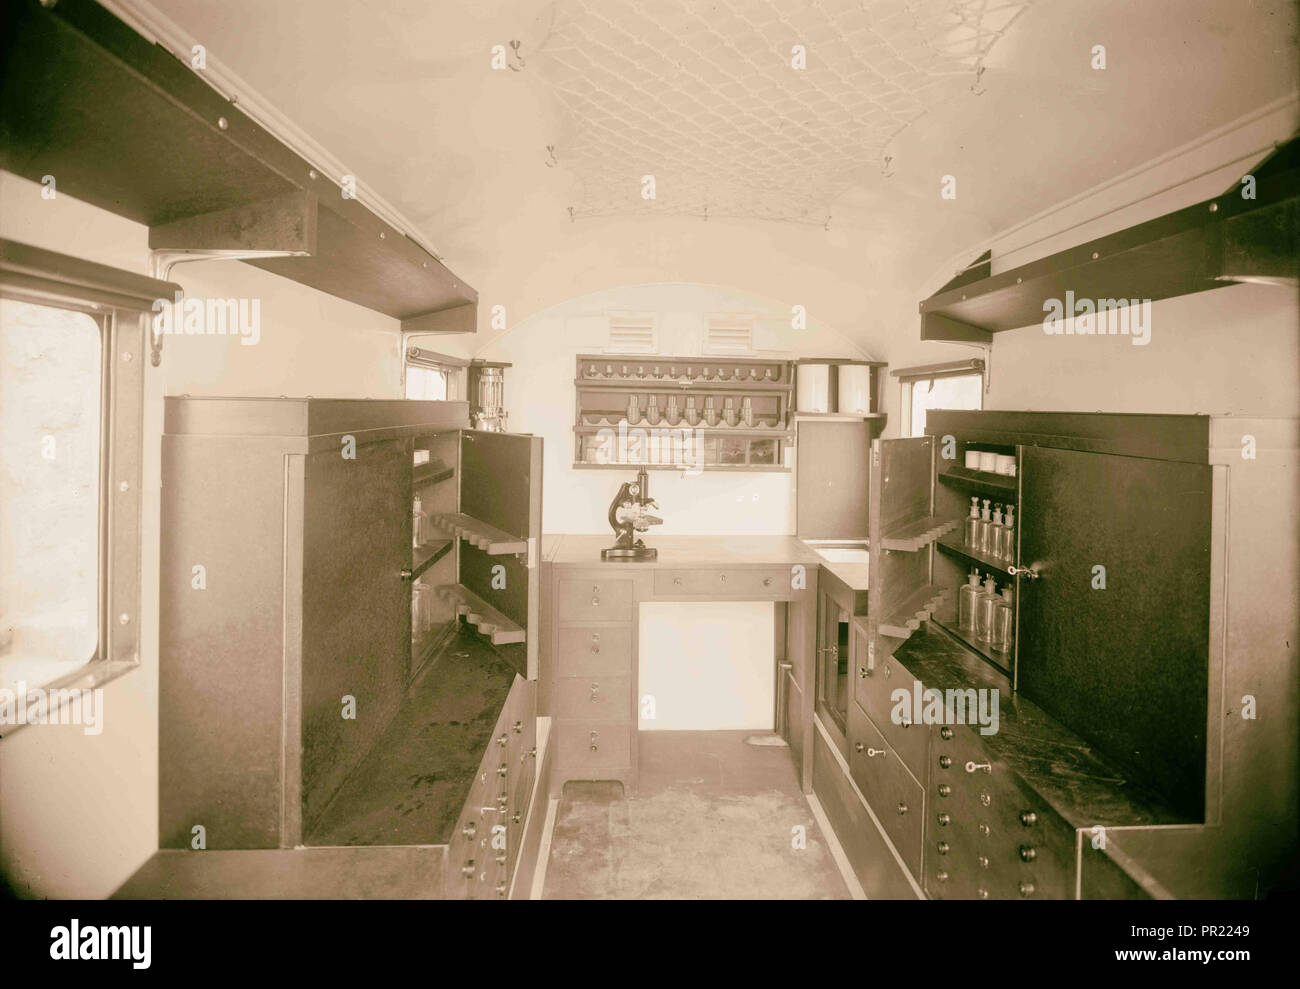 Mobile medizinische Einheit für Beduinenstämme in Transjordanien. Die dispensary Van. Interieur. 1934, Jordanien Stockfoto